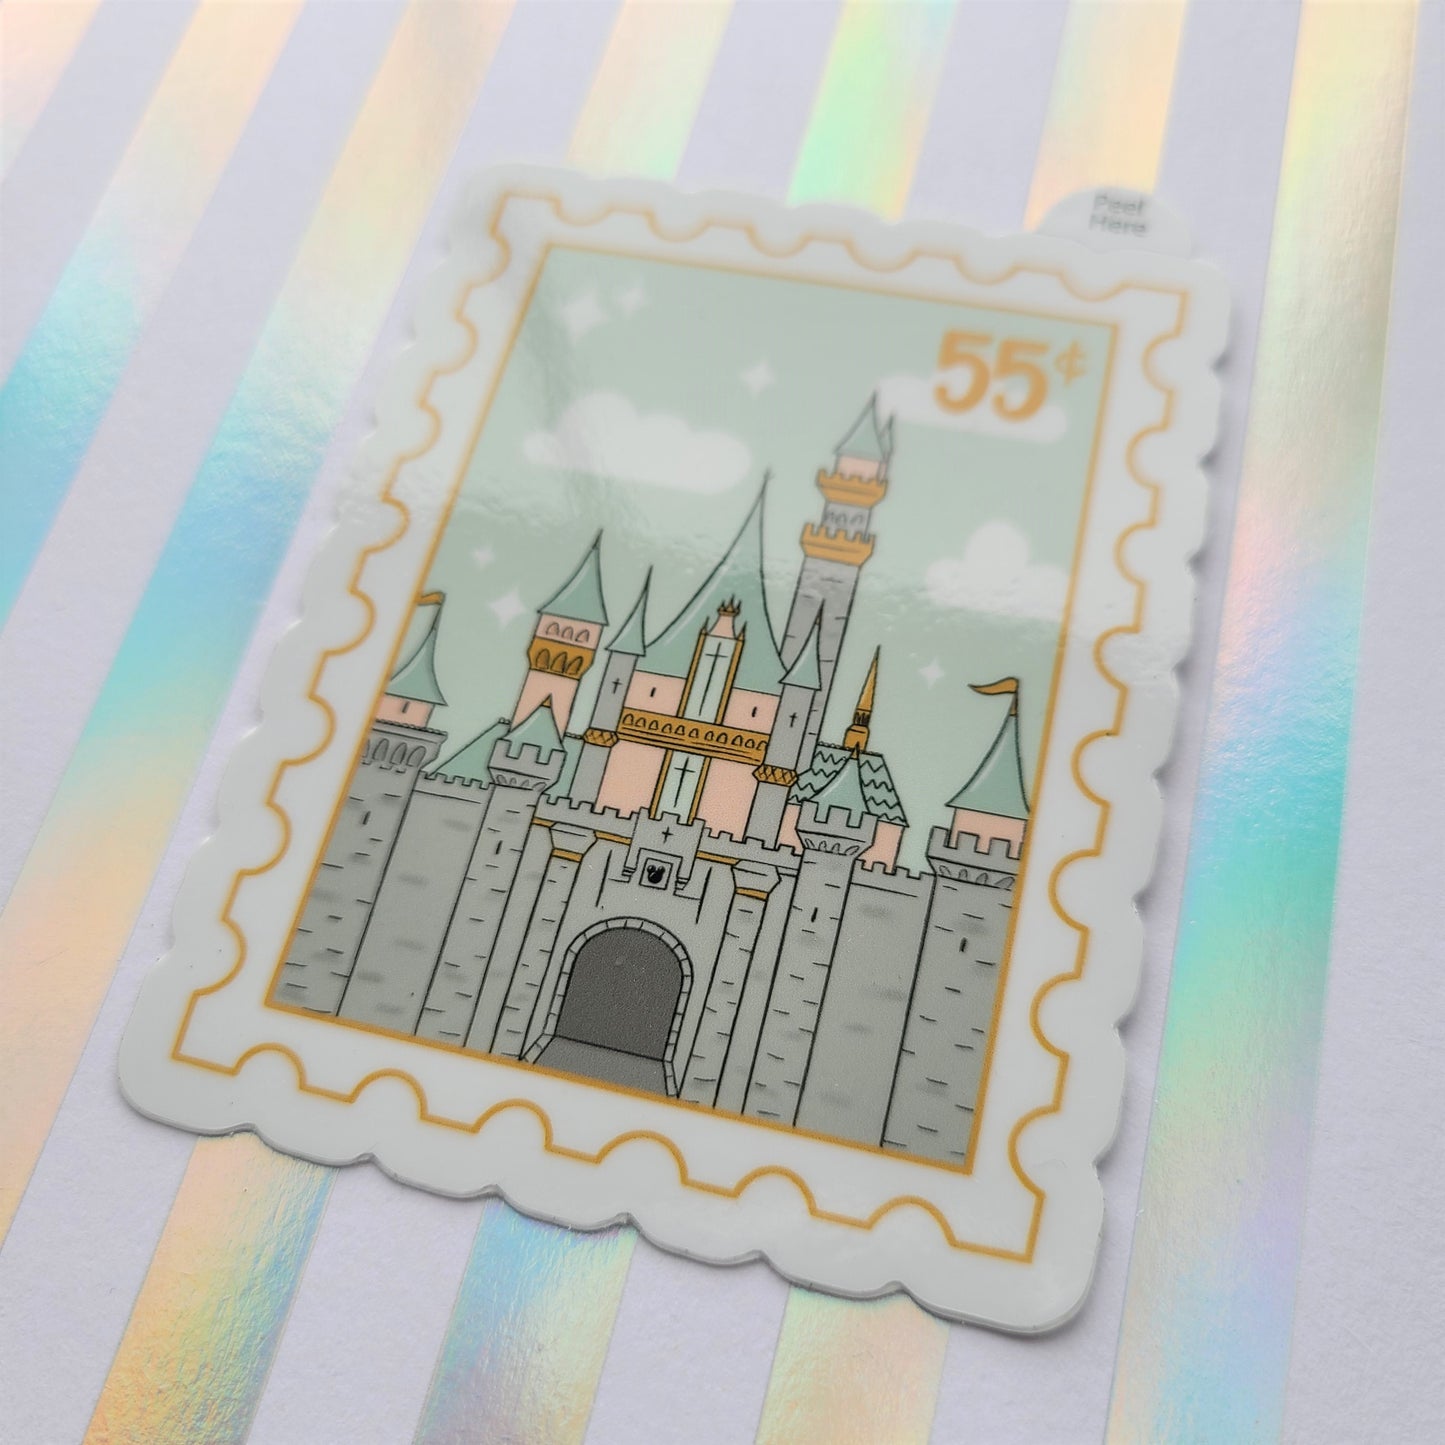 Disneyland Castle Stamp Vinyl Sticker